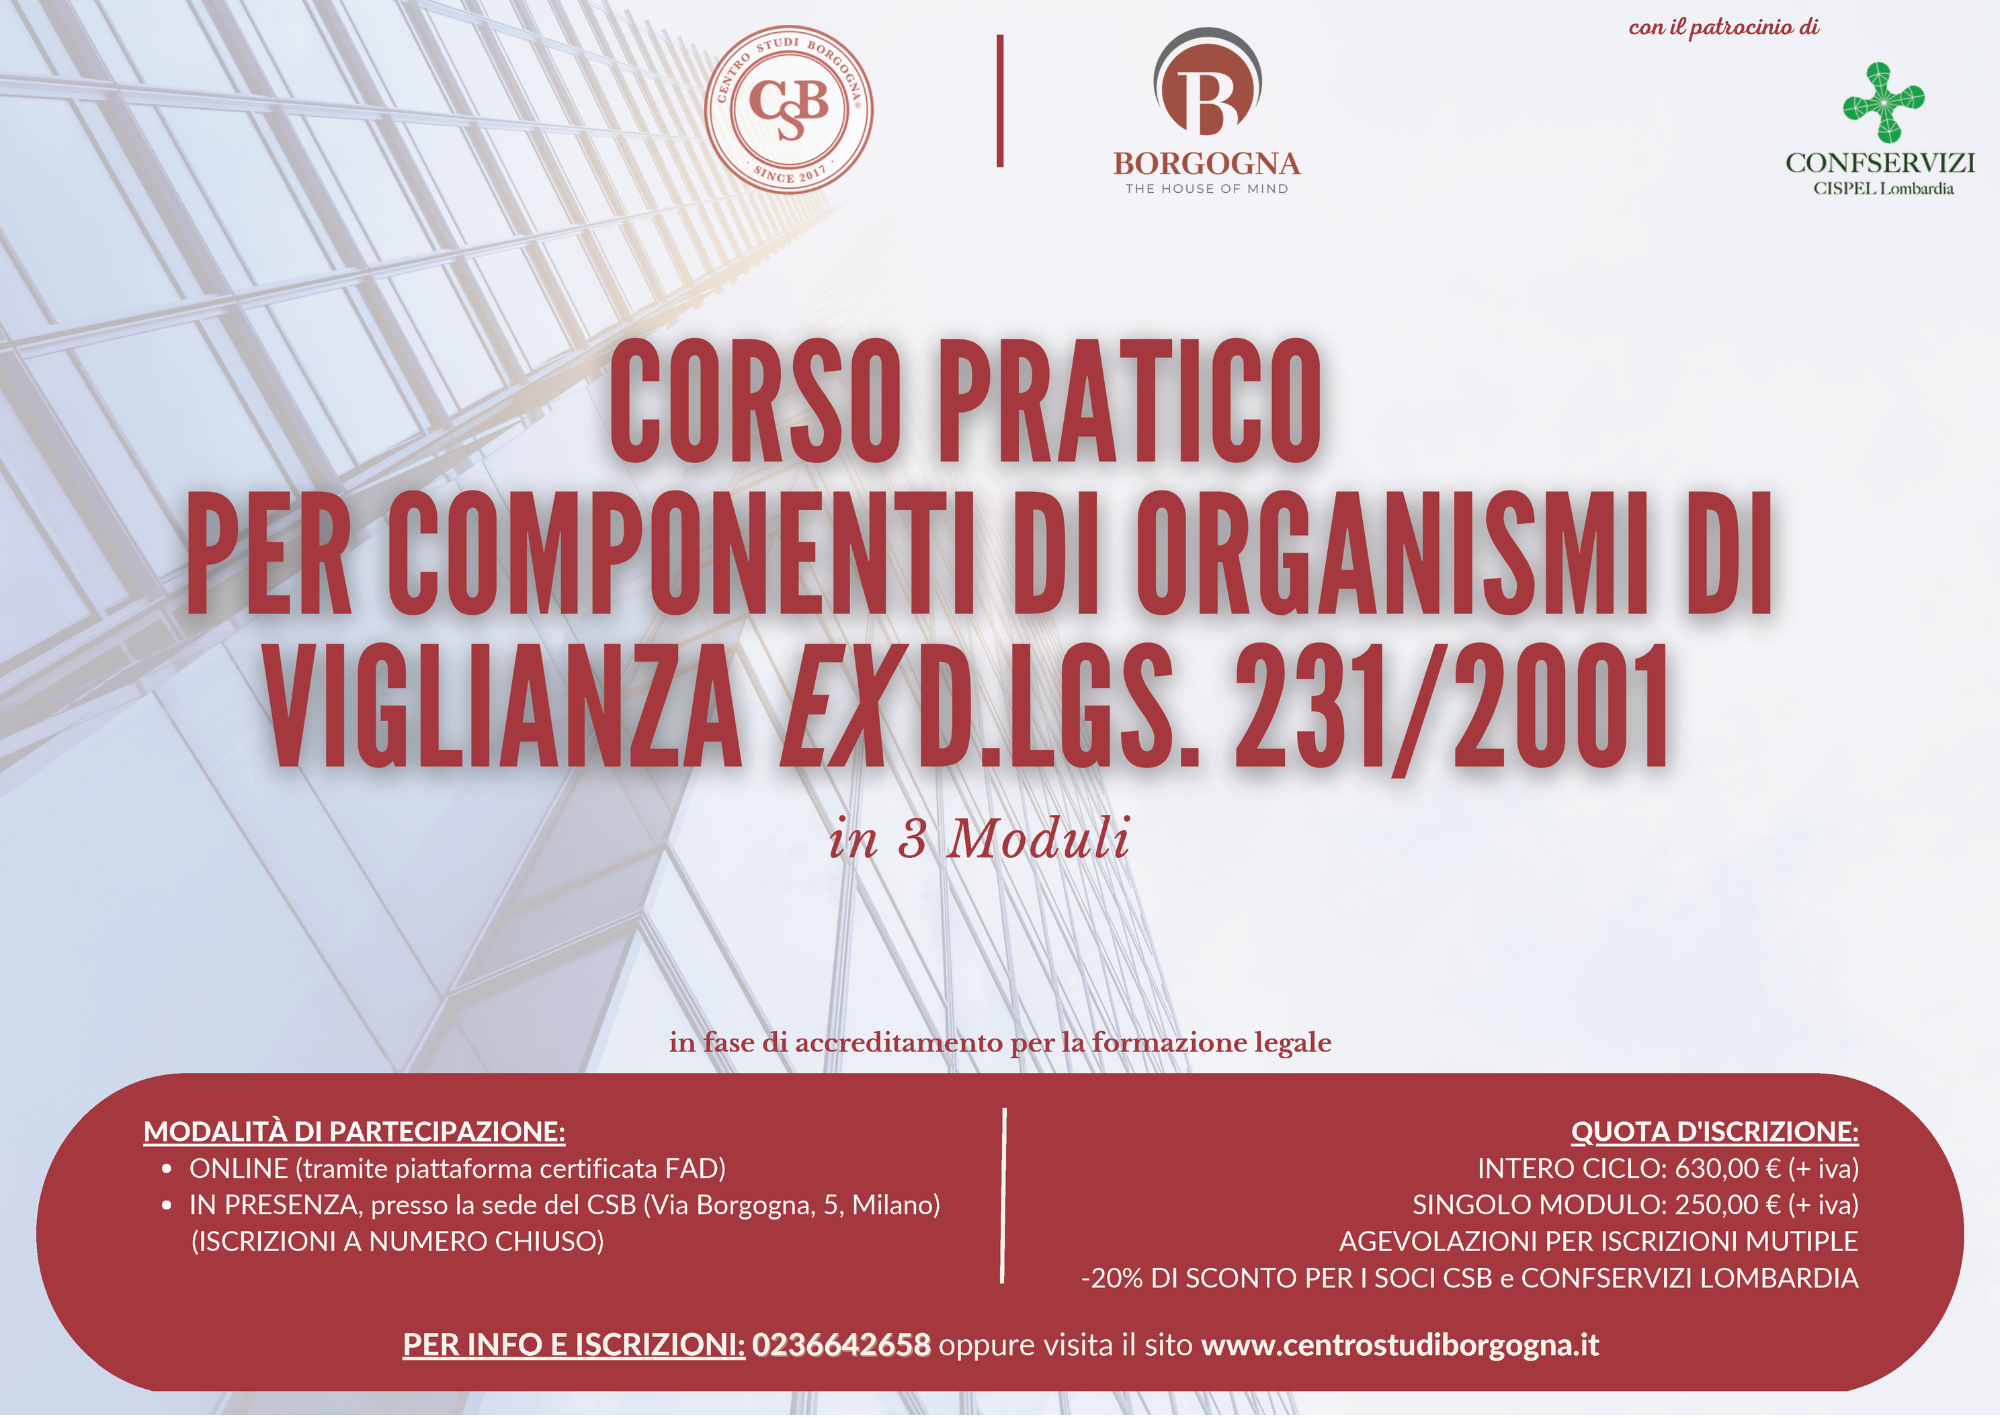 Corso pratico per componenti di Organismi di Vigilanza ex D.lgs. 231/2001